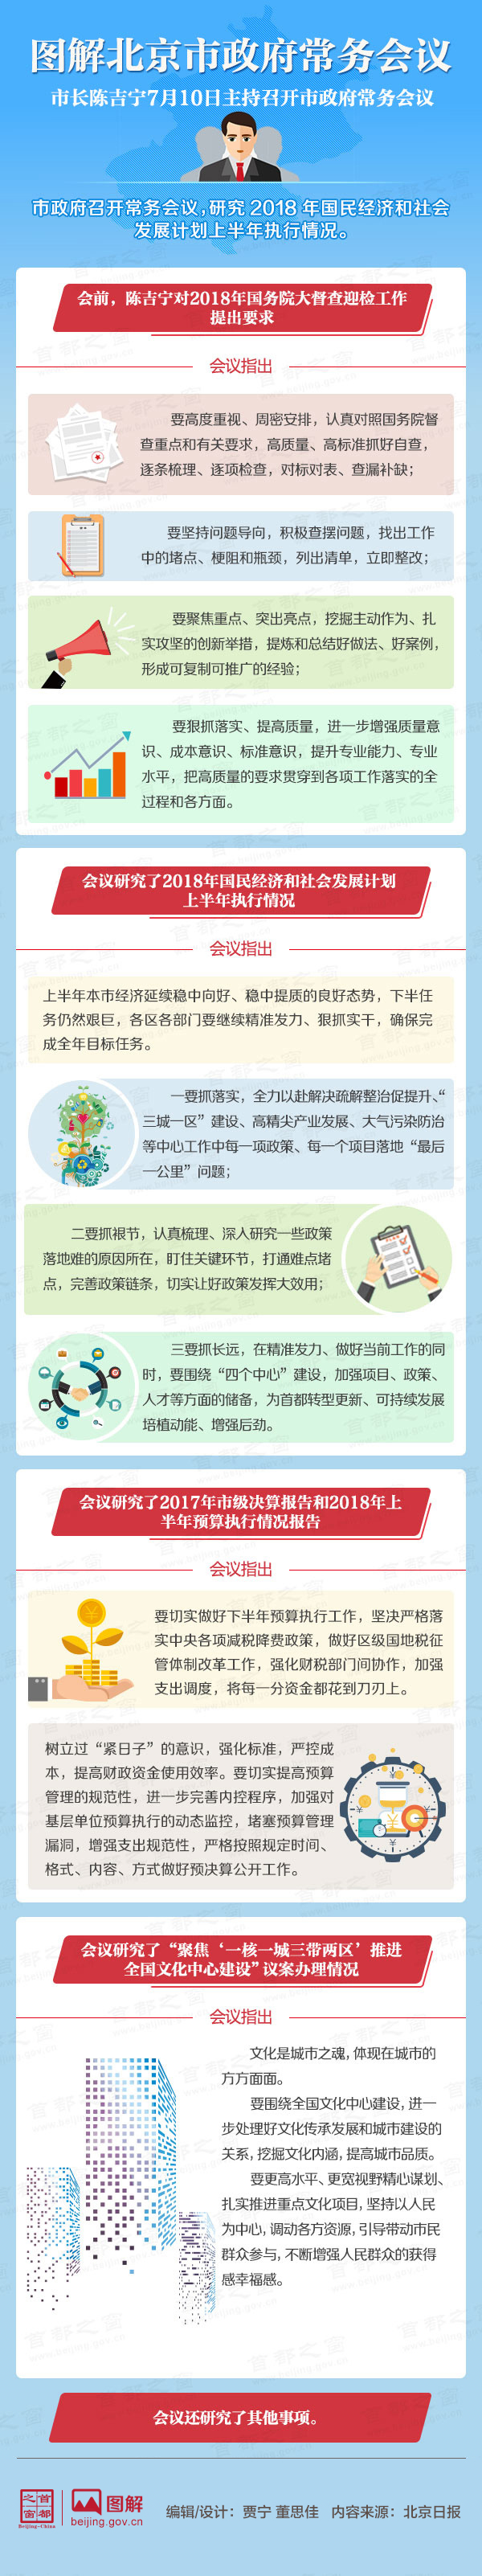 圖解2018年7月10日北京市政府常務會議